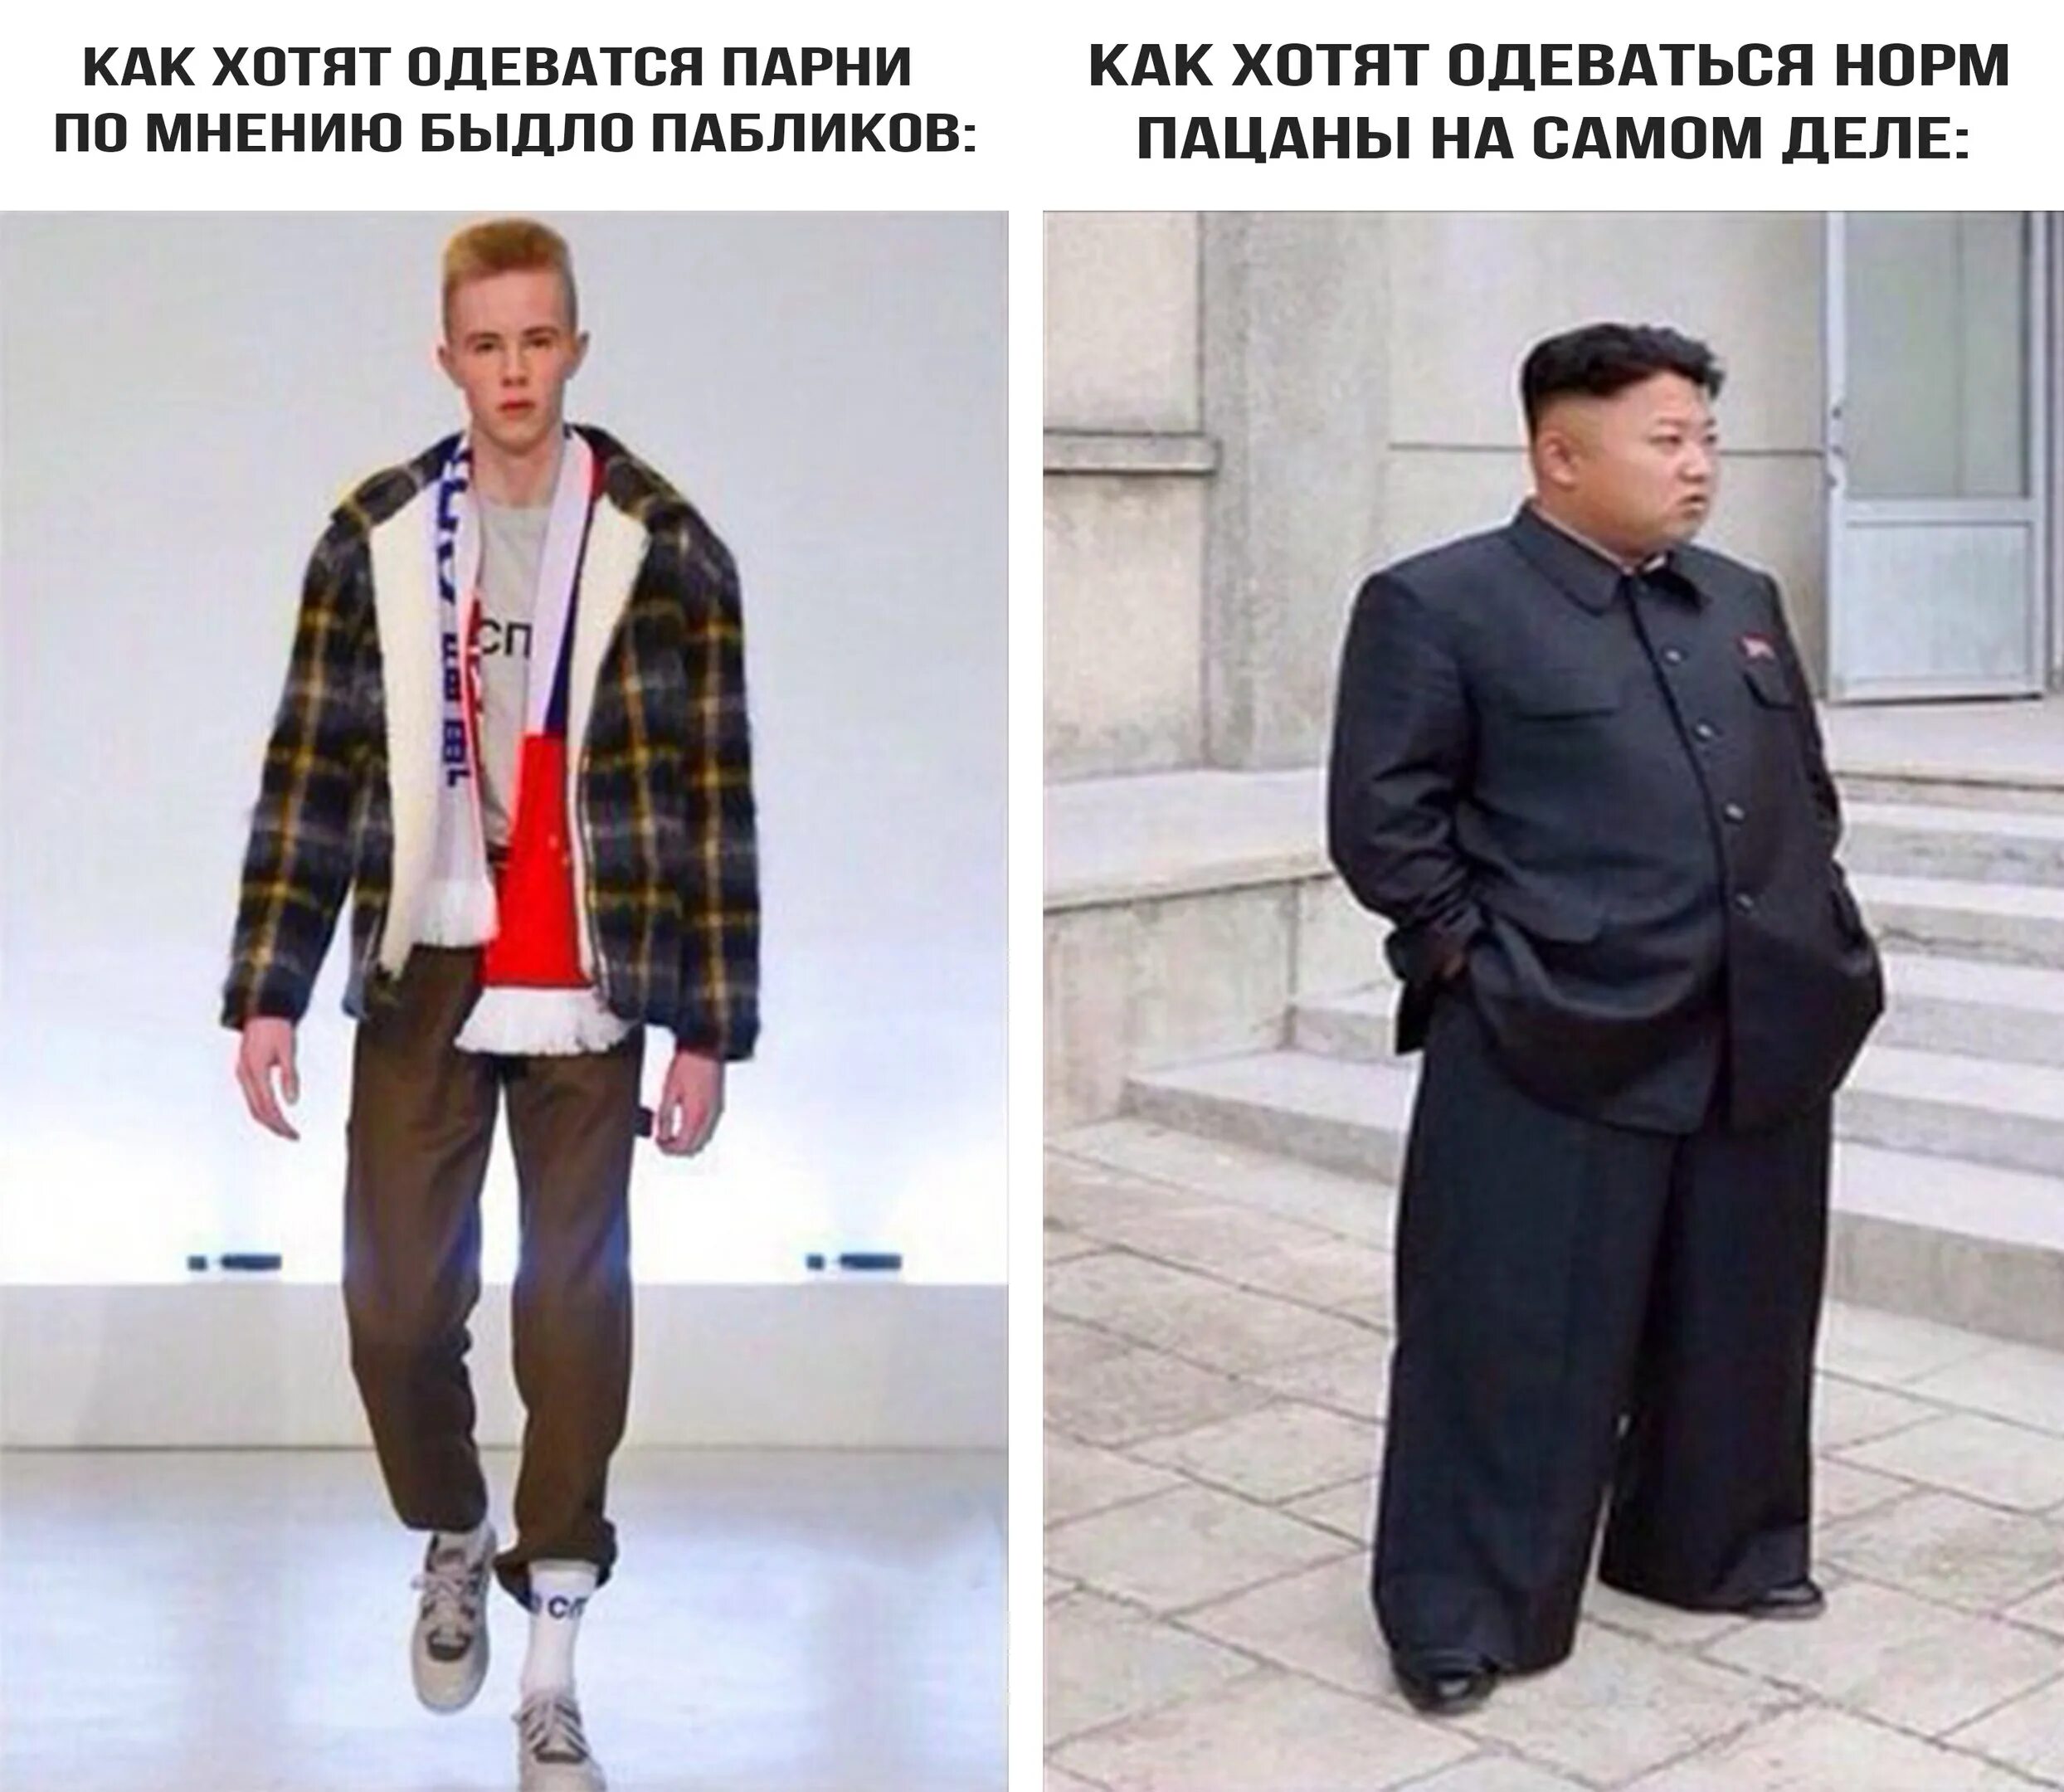 Мнение о русских мужчинах. Нормальная одежда. Одеваться как хочется. Как одеваются нормальные пацаны.